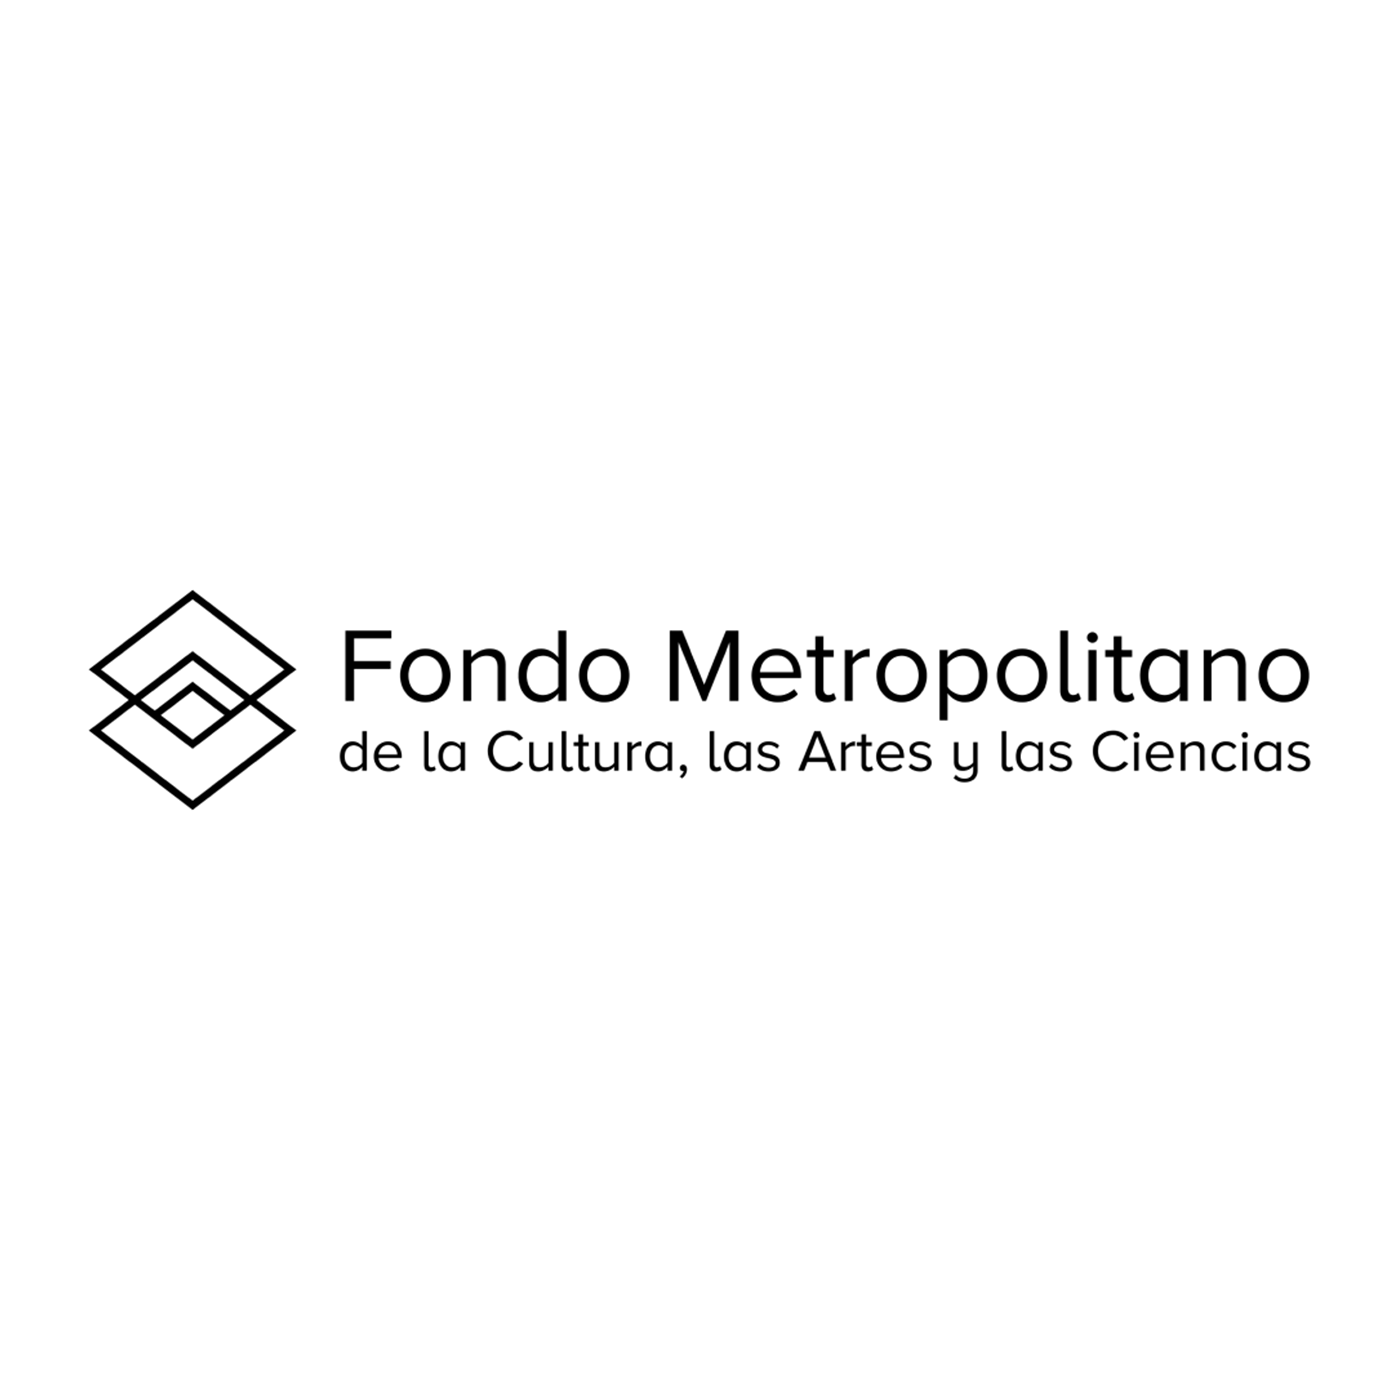 Fondo Metropolitano